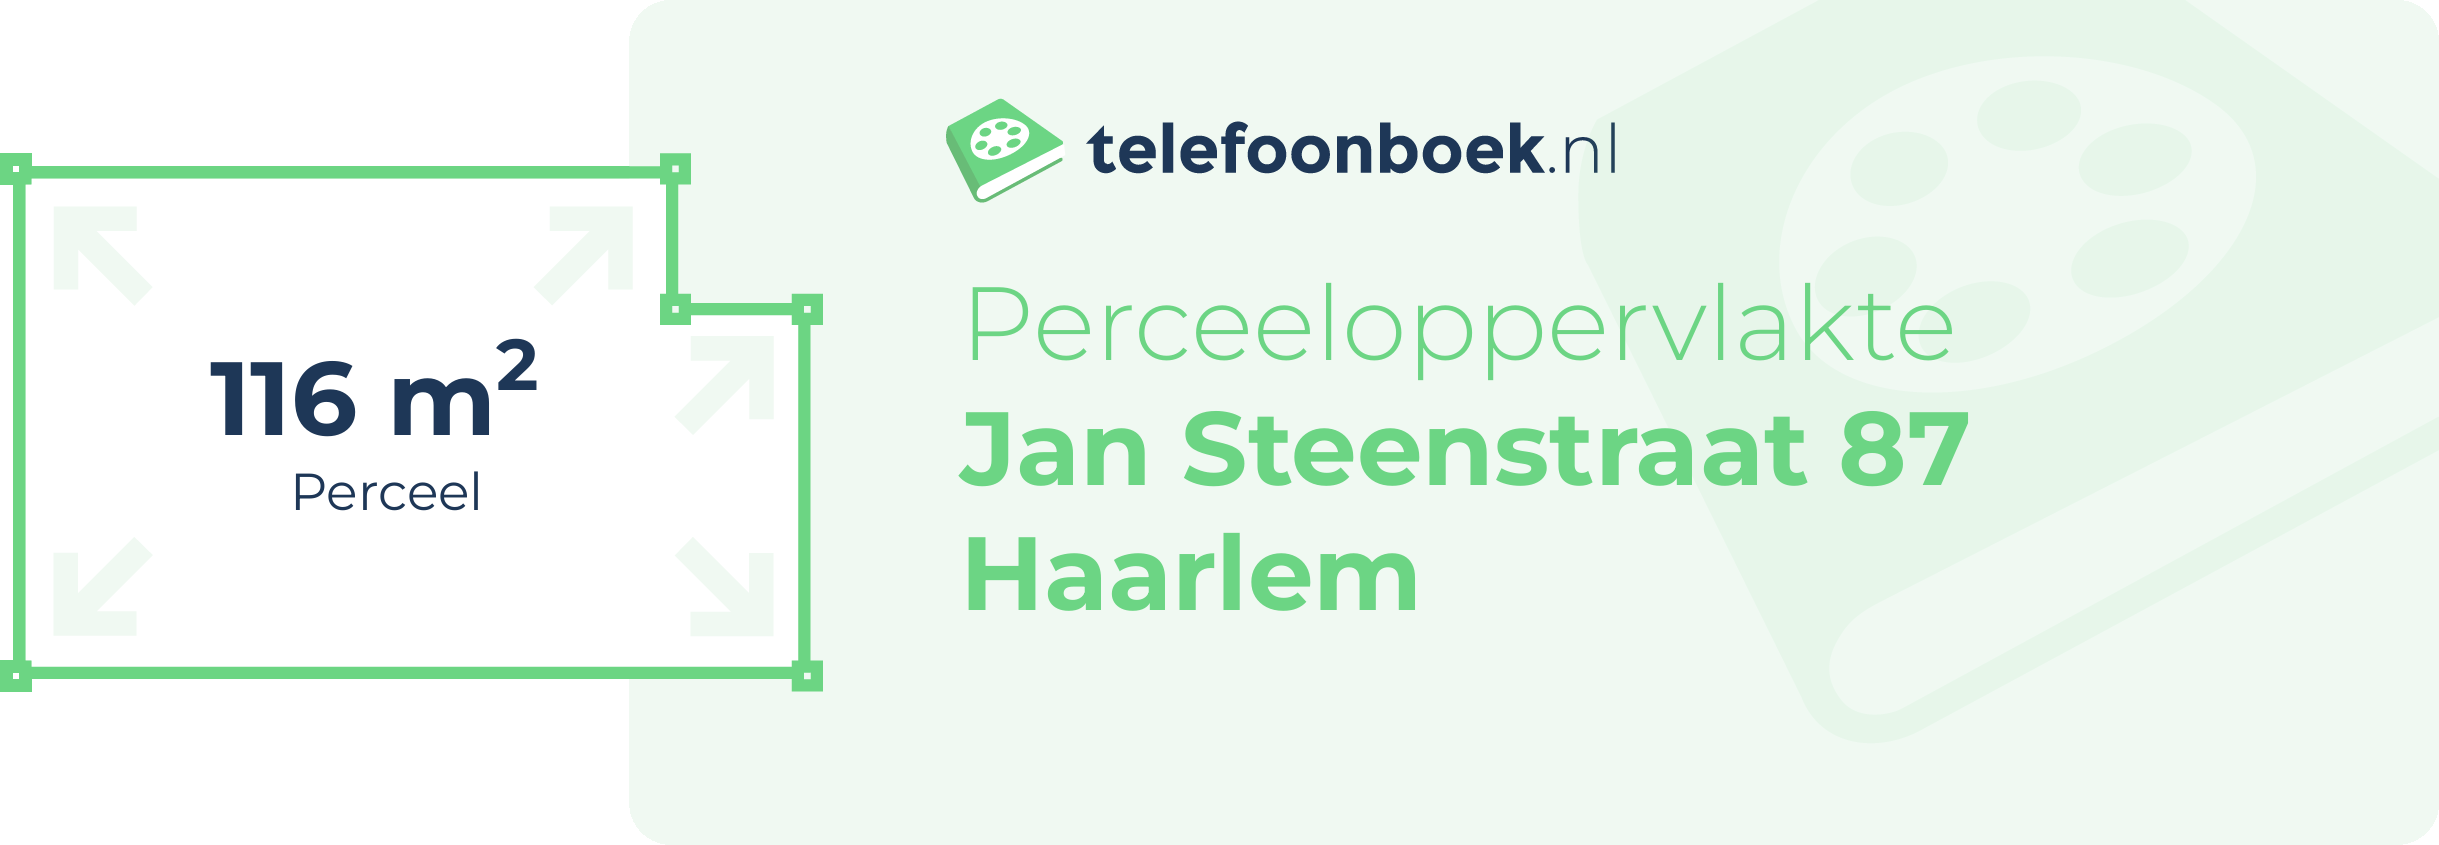 Perceeloppervlakte Jan Steenstraat 87 Haarlem